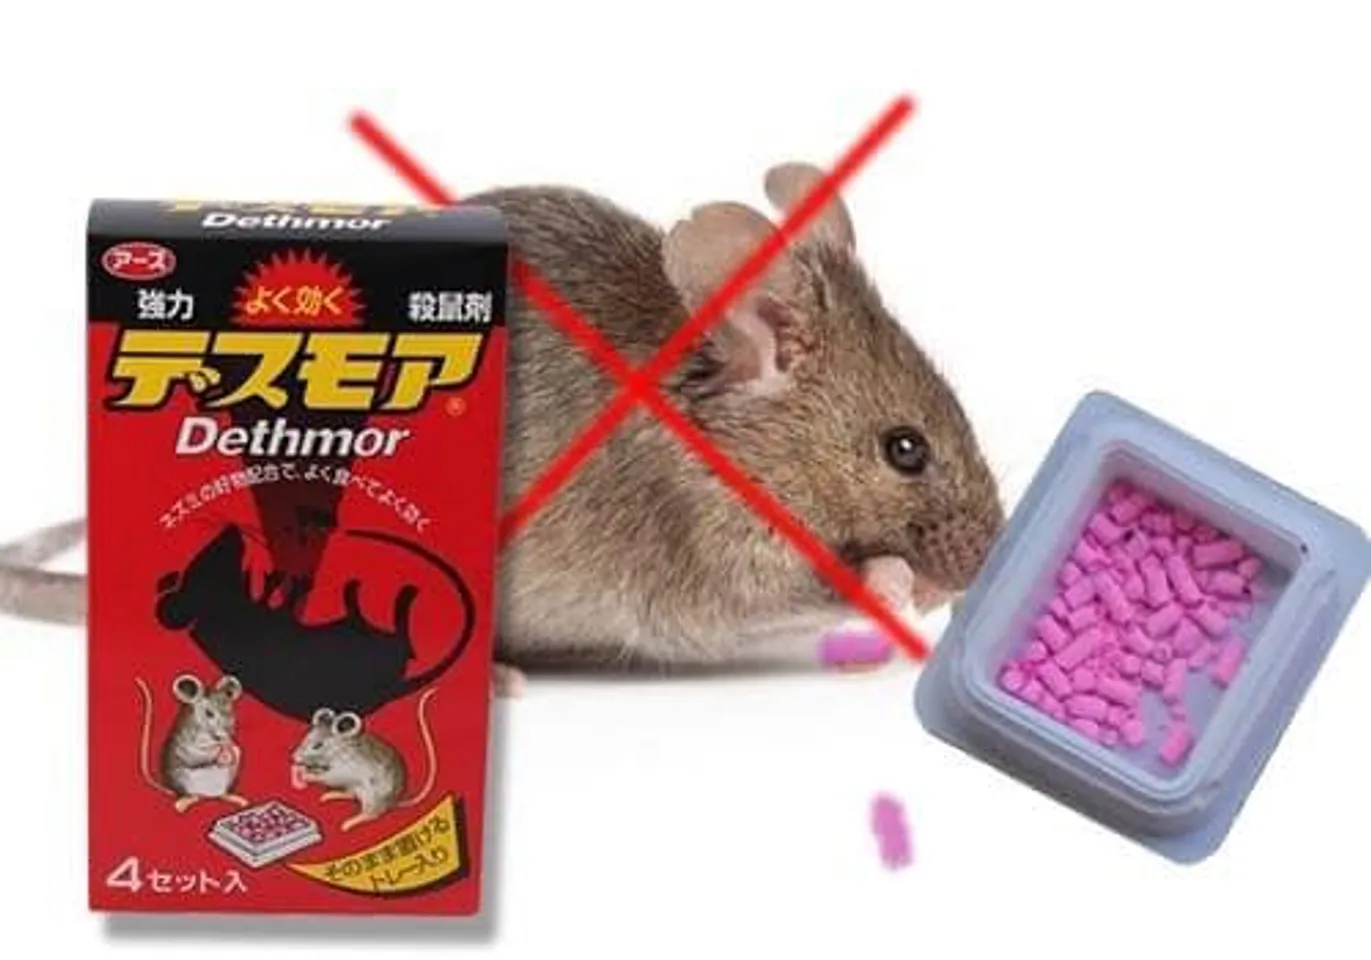 Viên diệt chuột Dethmor chính hãng, chất lượng, hỗ trợ bảo vệ không gian sống tối ưu